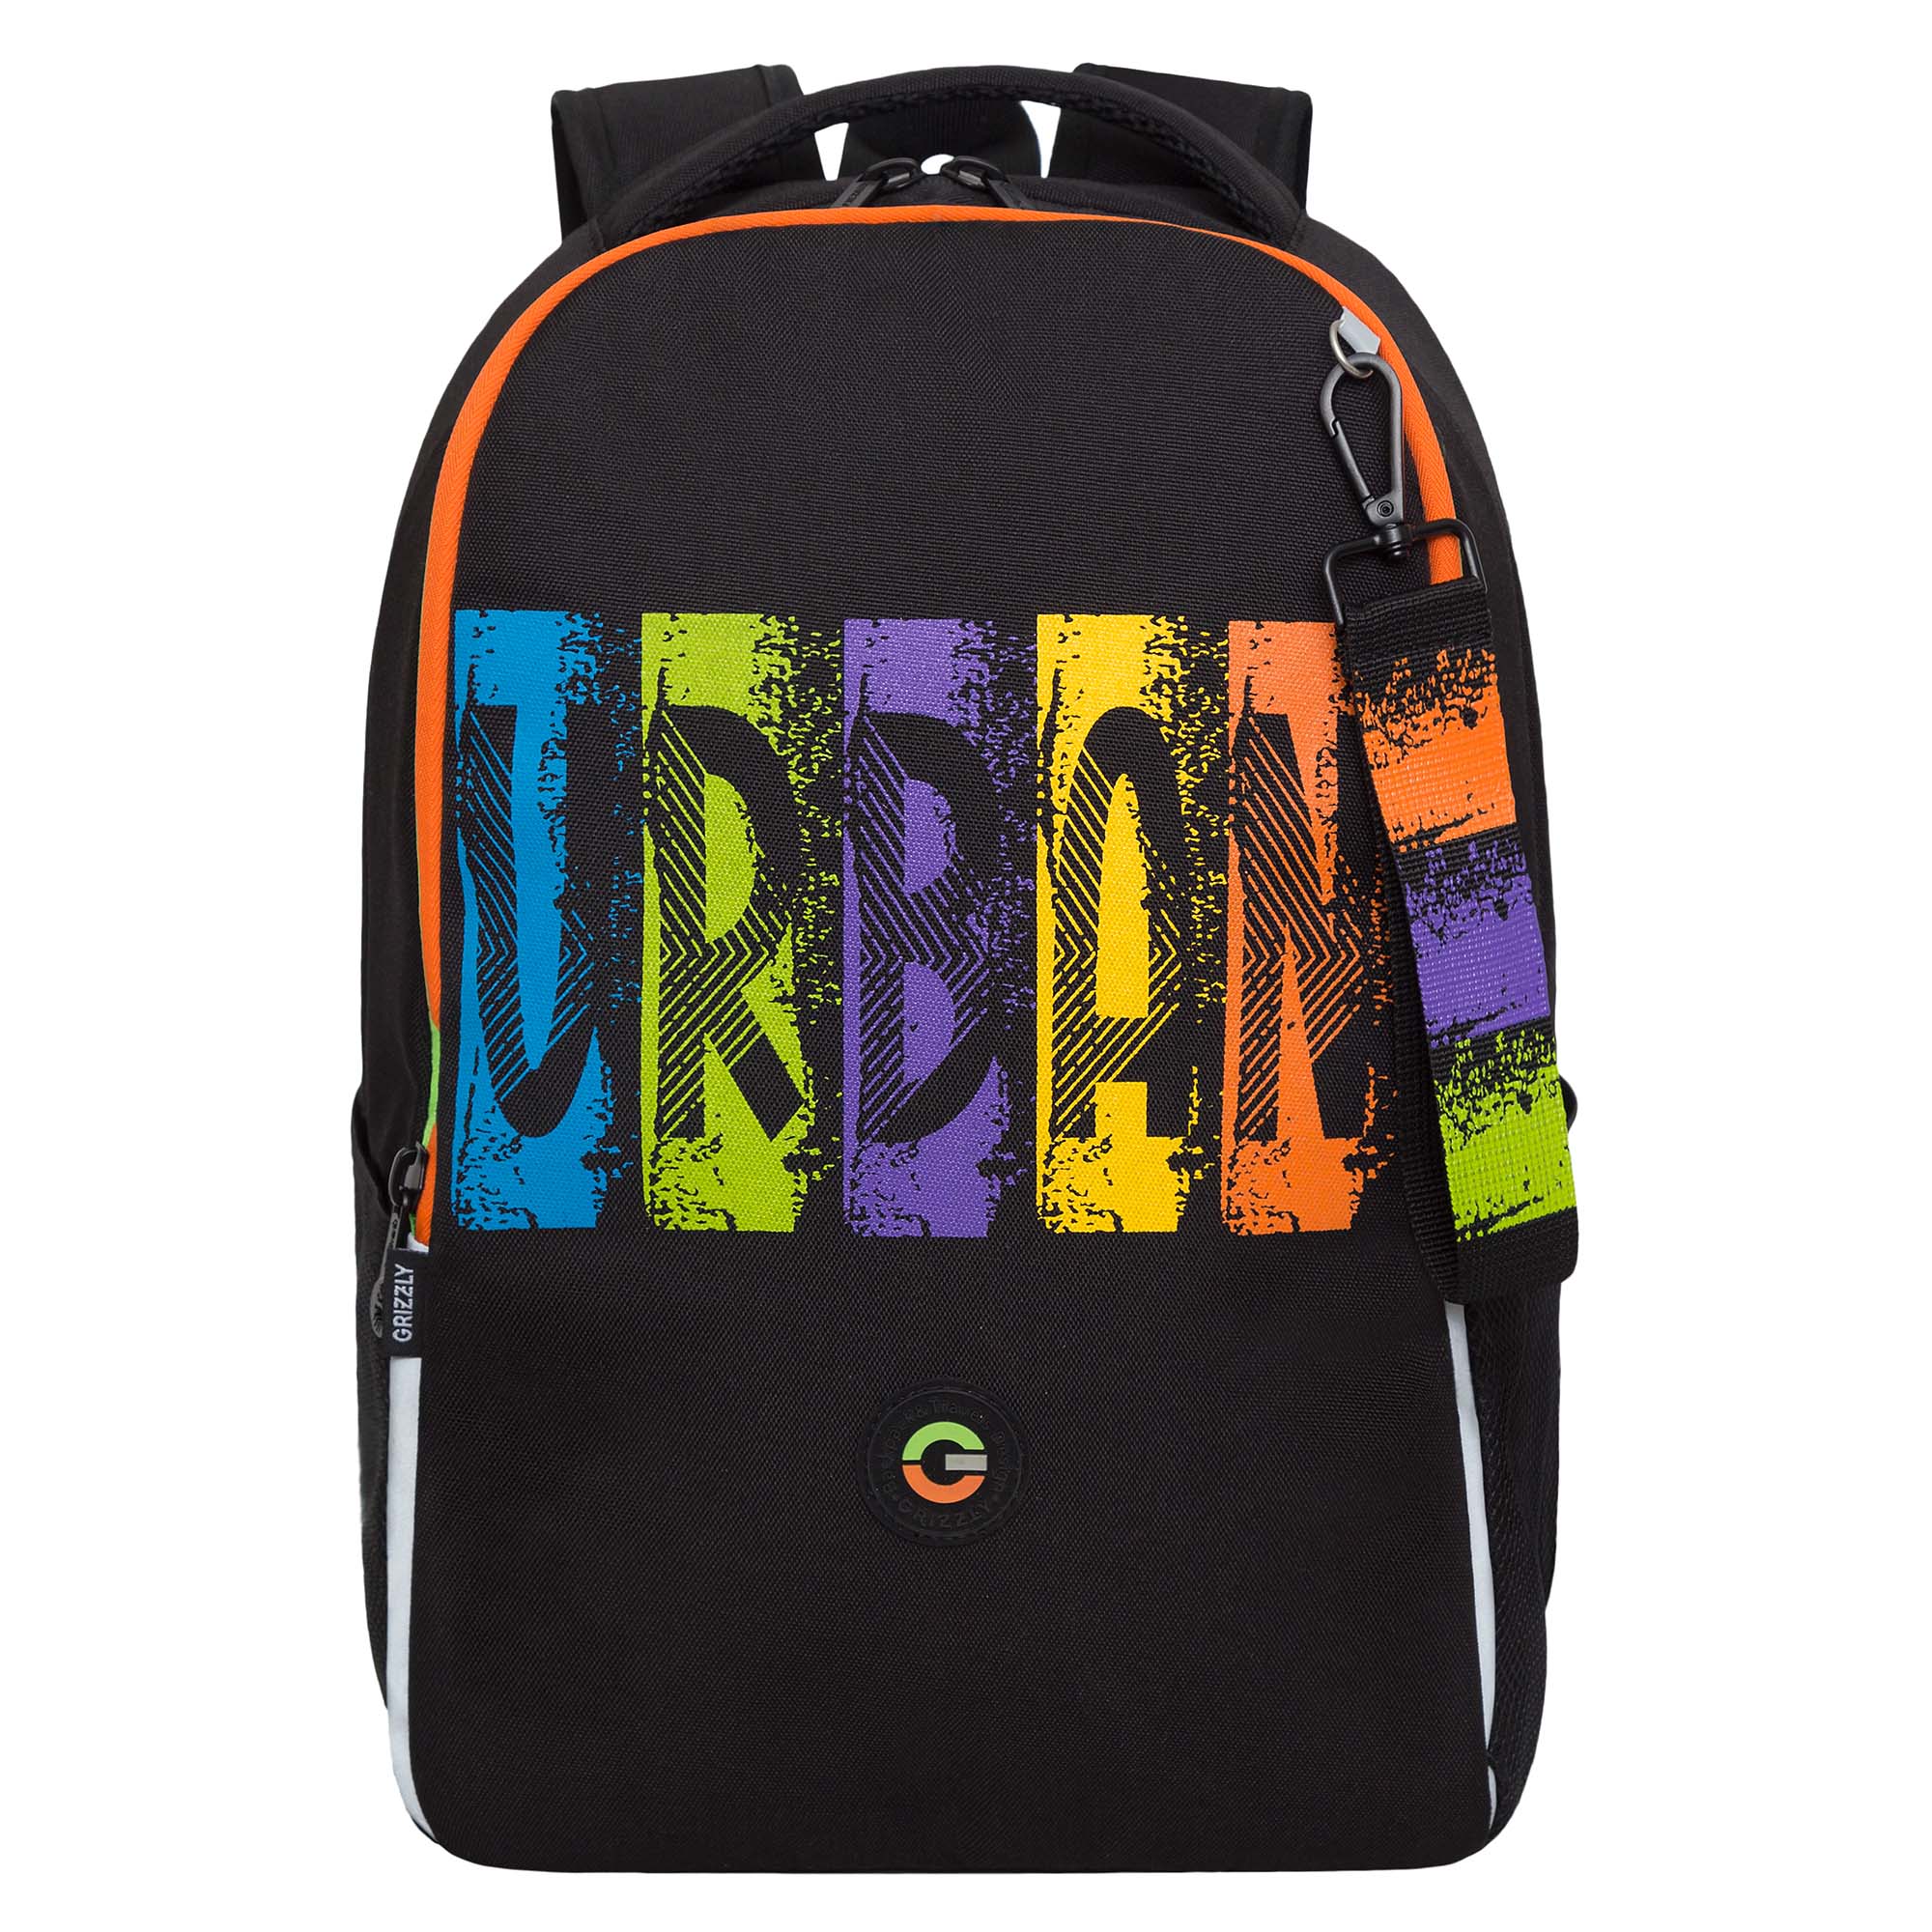 Рюкзак школьный GRIZZLY легкий с жесткой спинкой, 2 отделения, черный, RB-451-3/1 рюкзак школьный сool pack jerry gradient frape 39х28х15 см 21 л 2 отделения